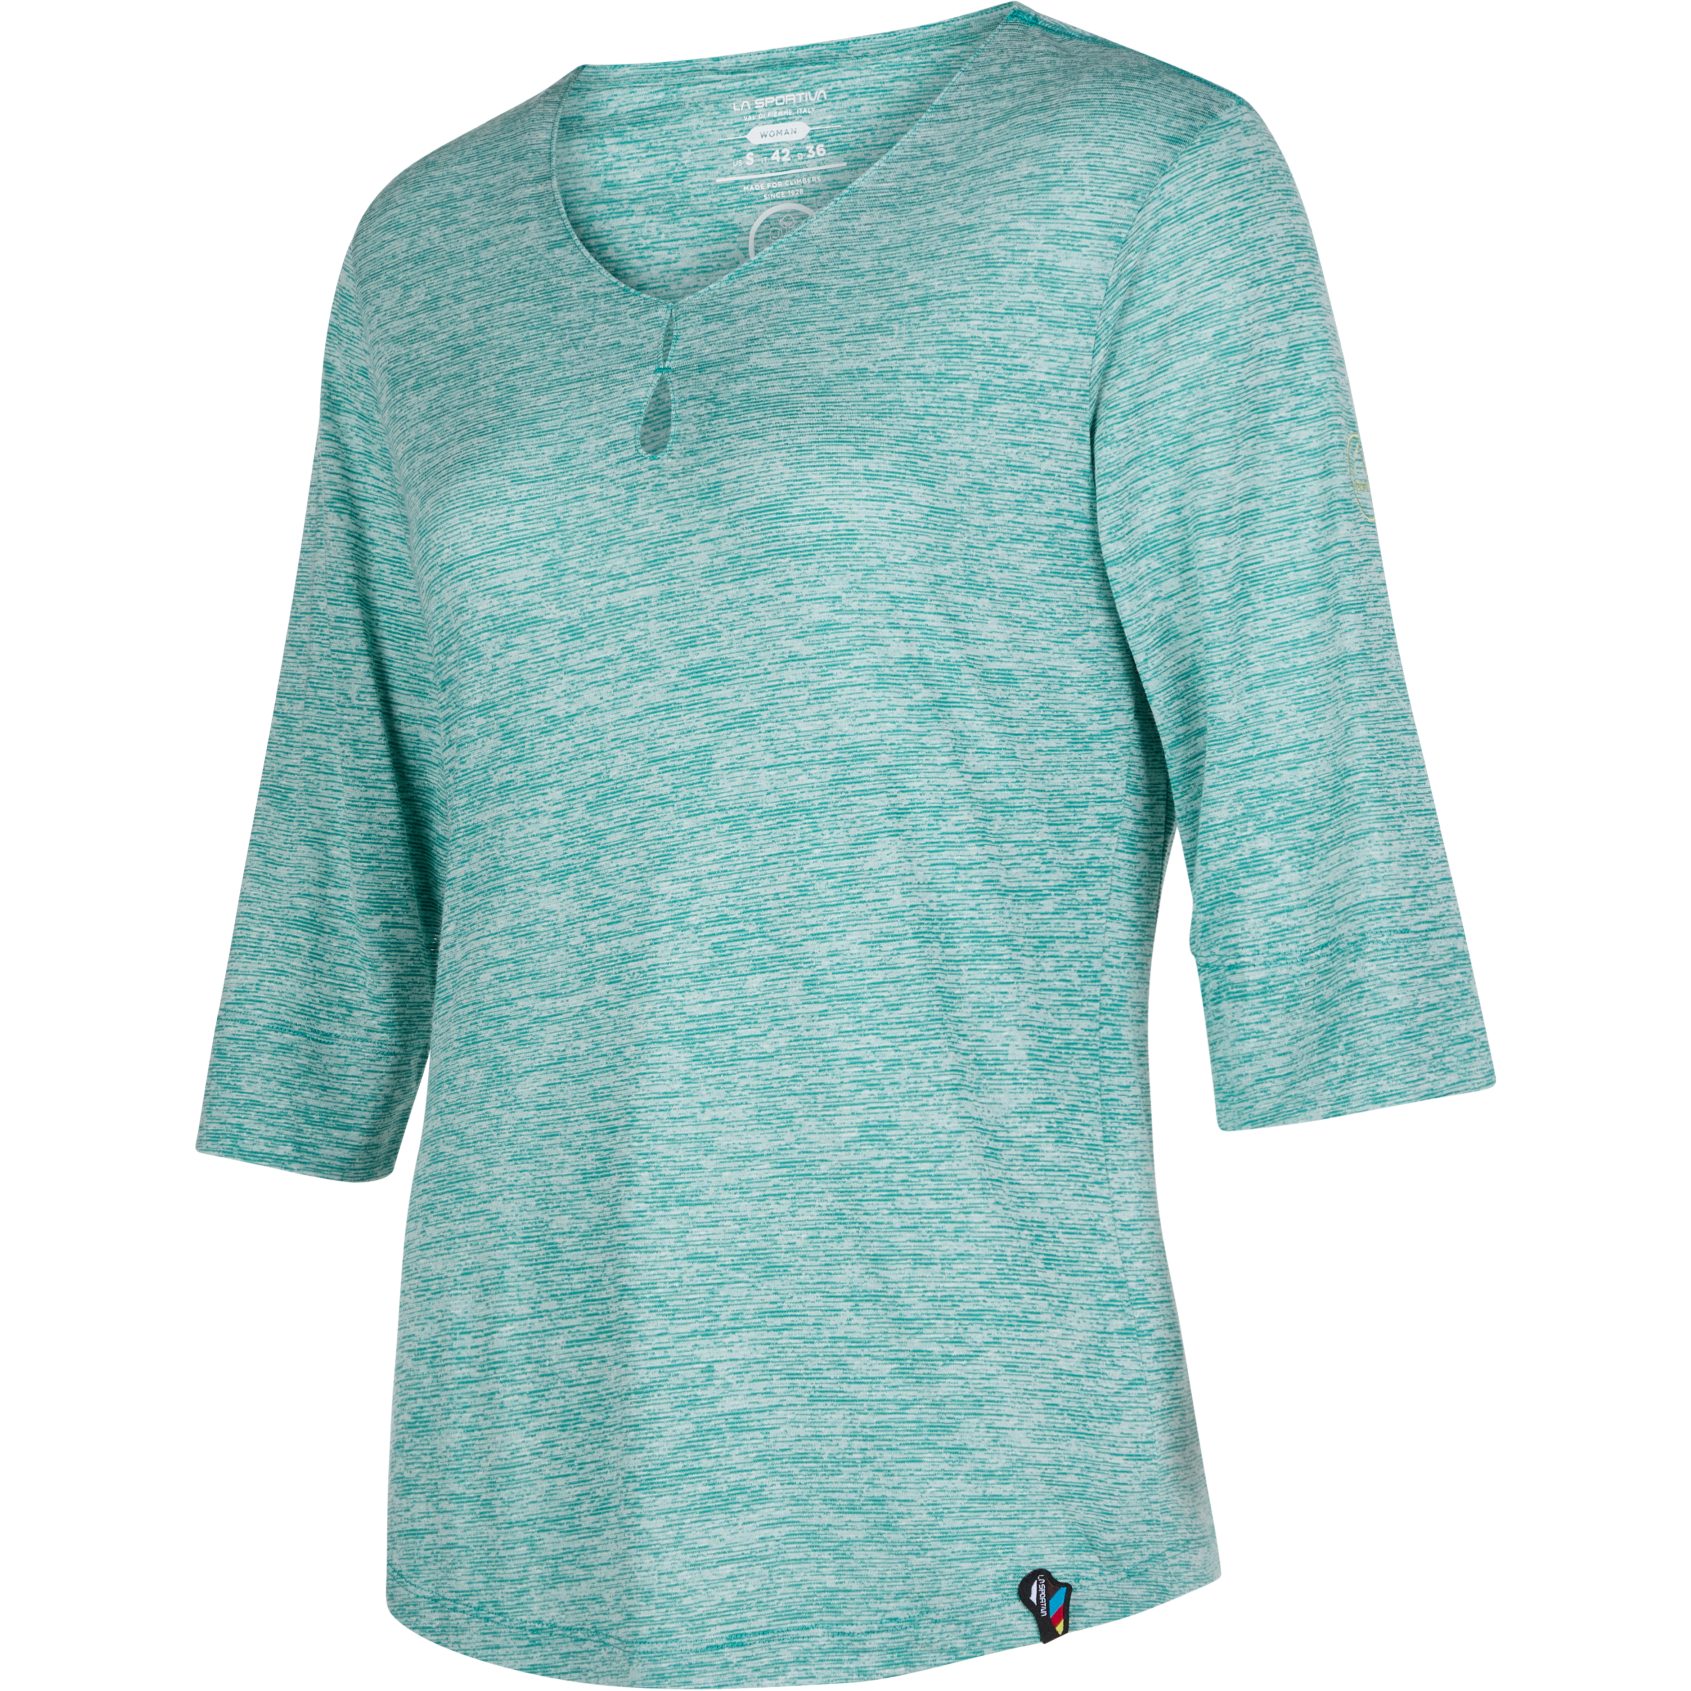 Produktbild von La Sportiva Wildflower T-Shirt Damen - Lagoon